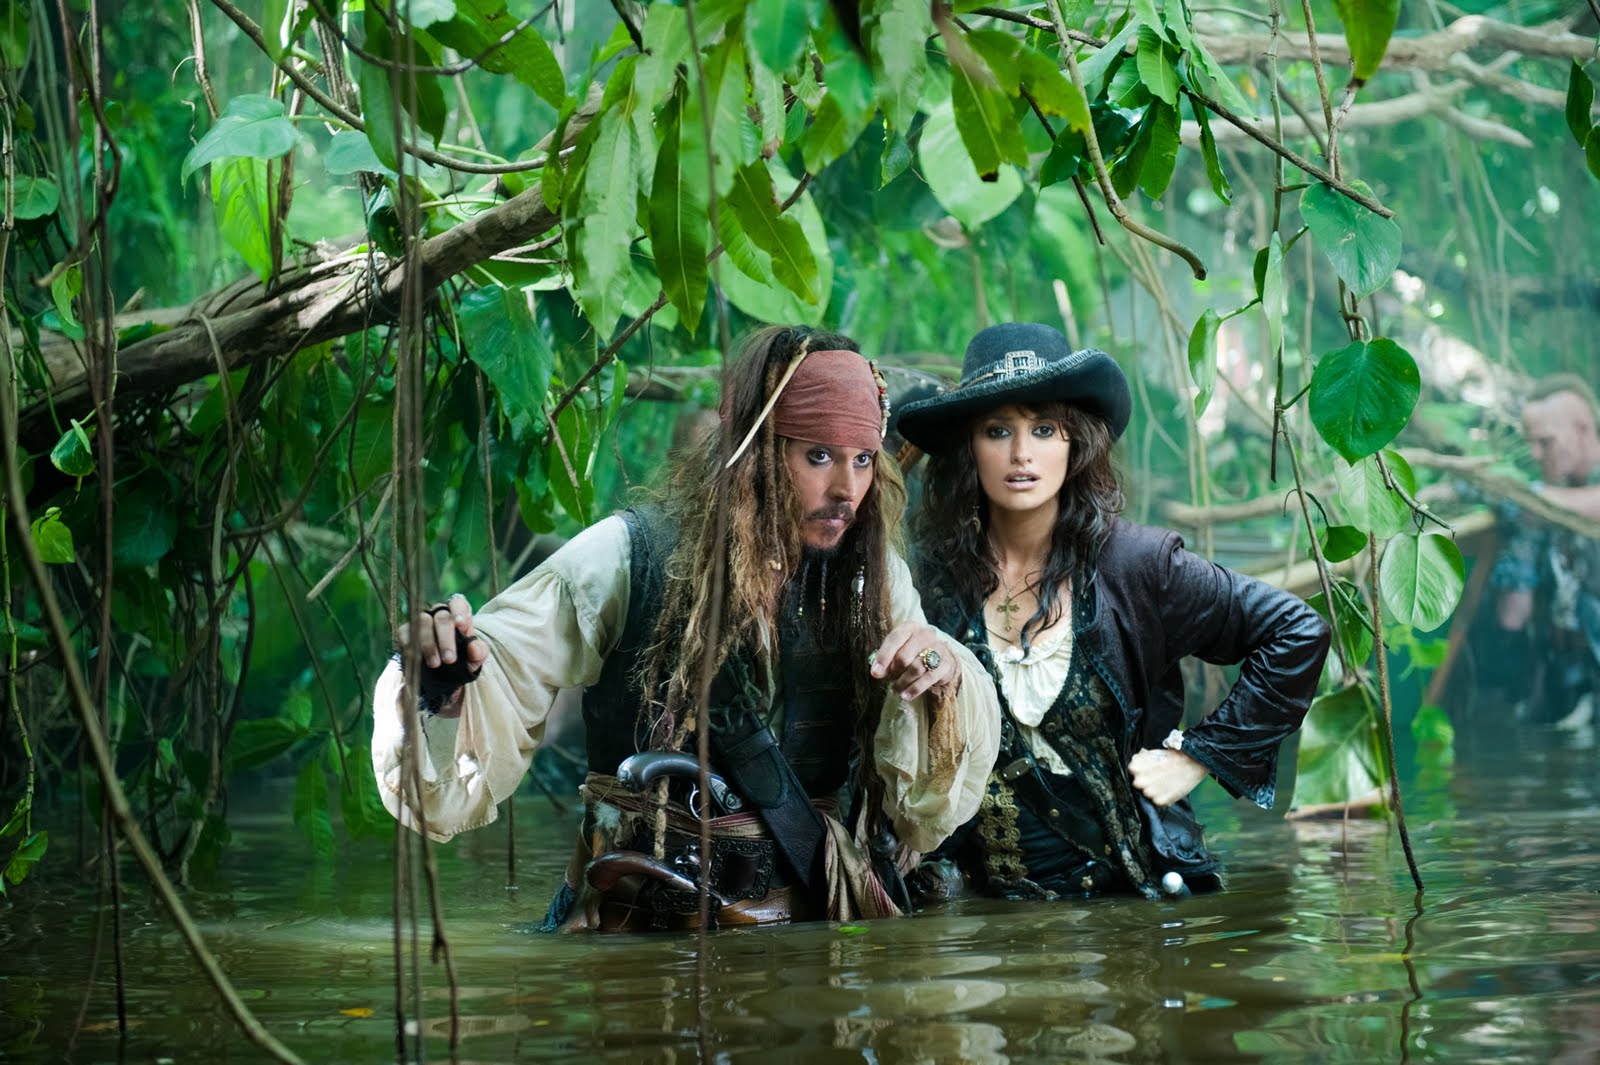 http://4.bp.blogspot.com/-5JJdSZjxMfw/TdgZ7abYx-I/AAAAAAAAB0I/OC5-EJ09dEw/s1600/johnny-depp-pirates-of-the-caribbean-on-stranger-tides-movie-image-2.jpg